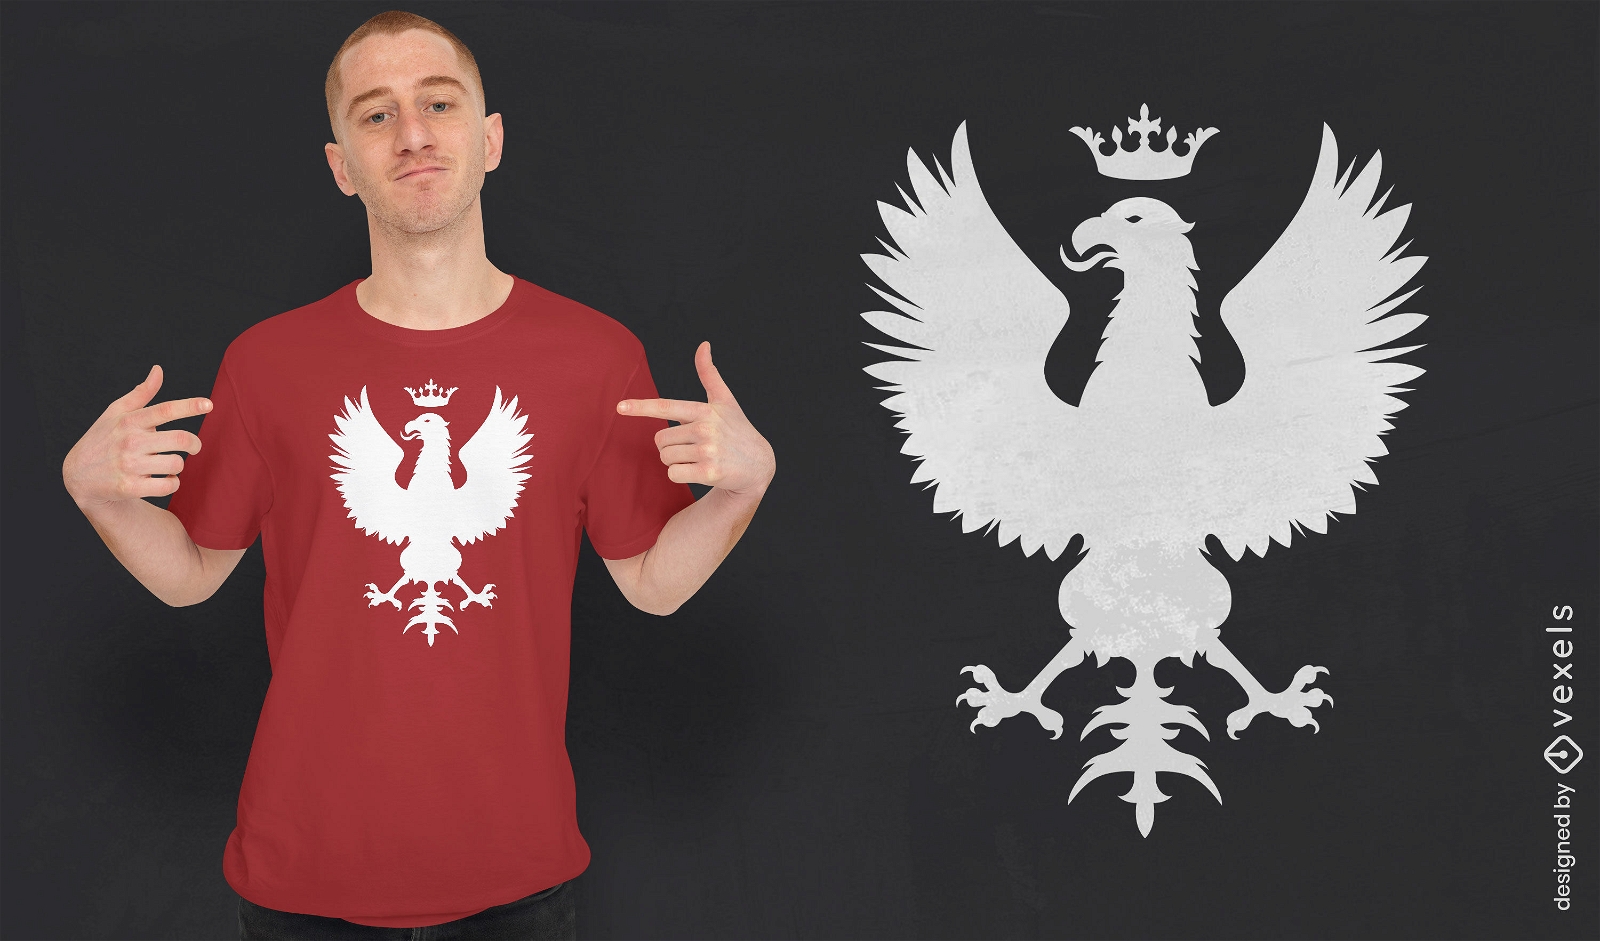 Polish coat of arms t-shirt design